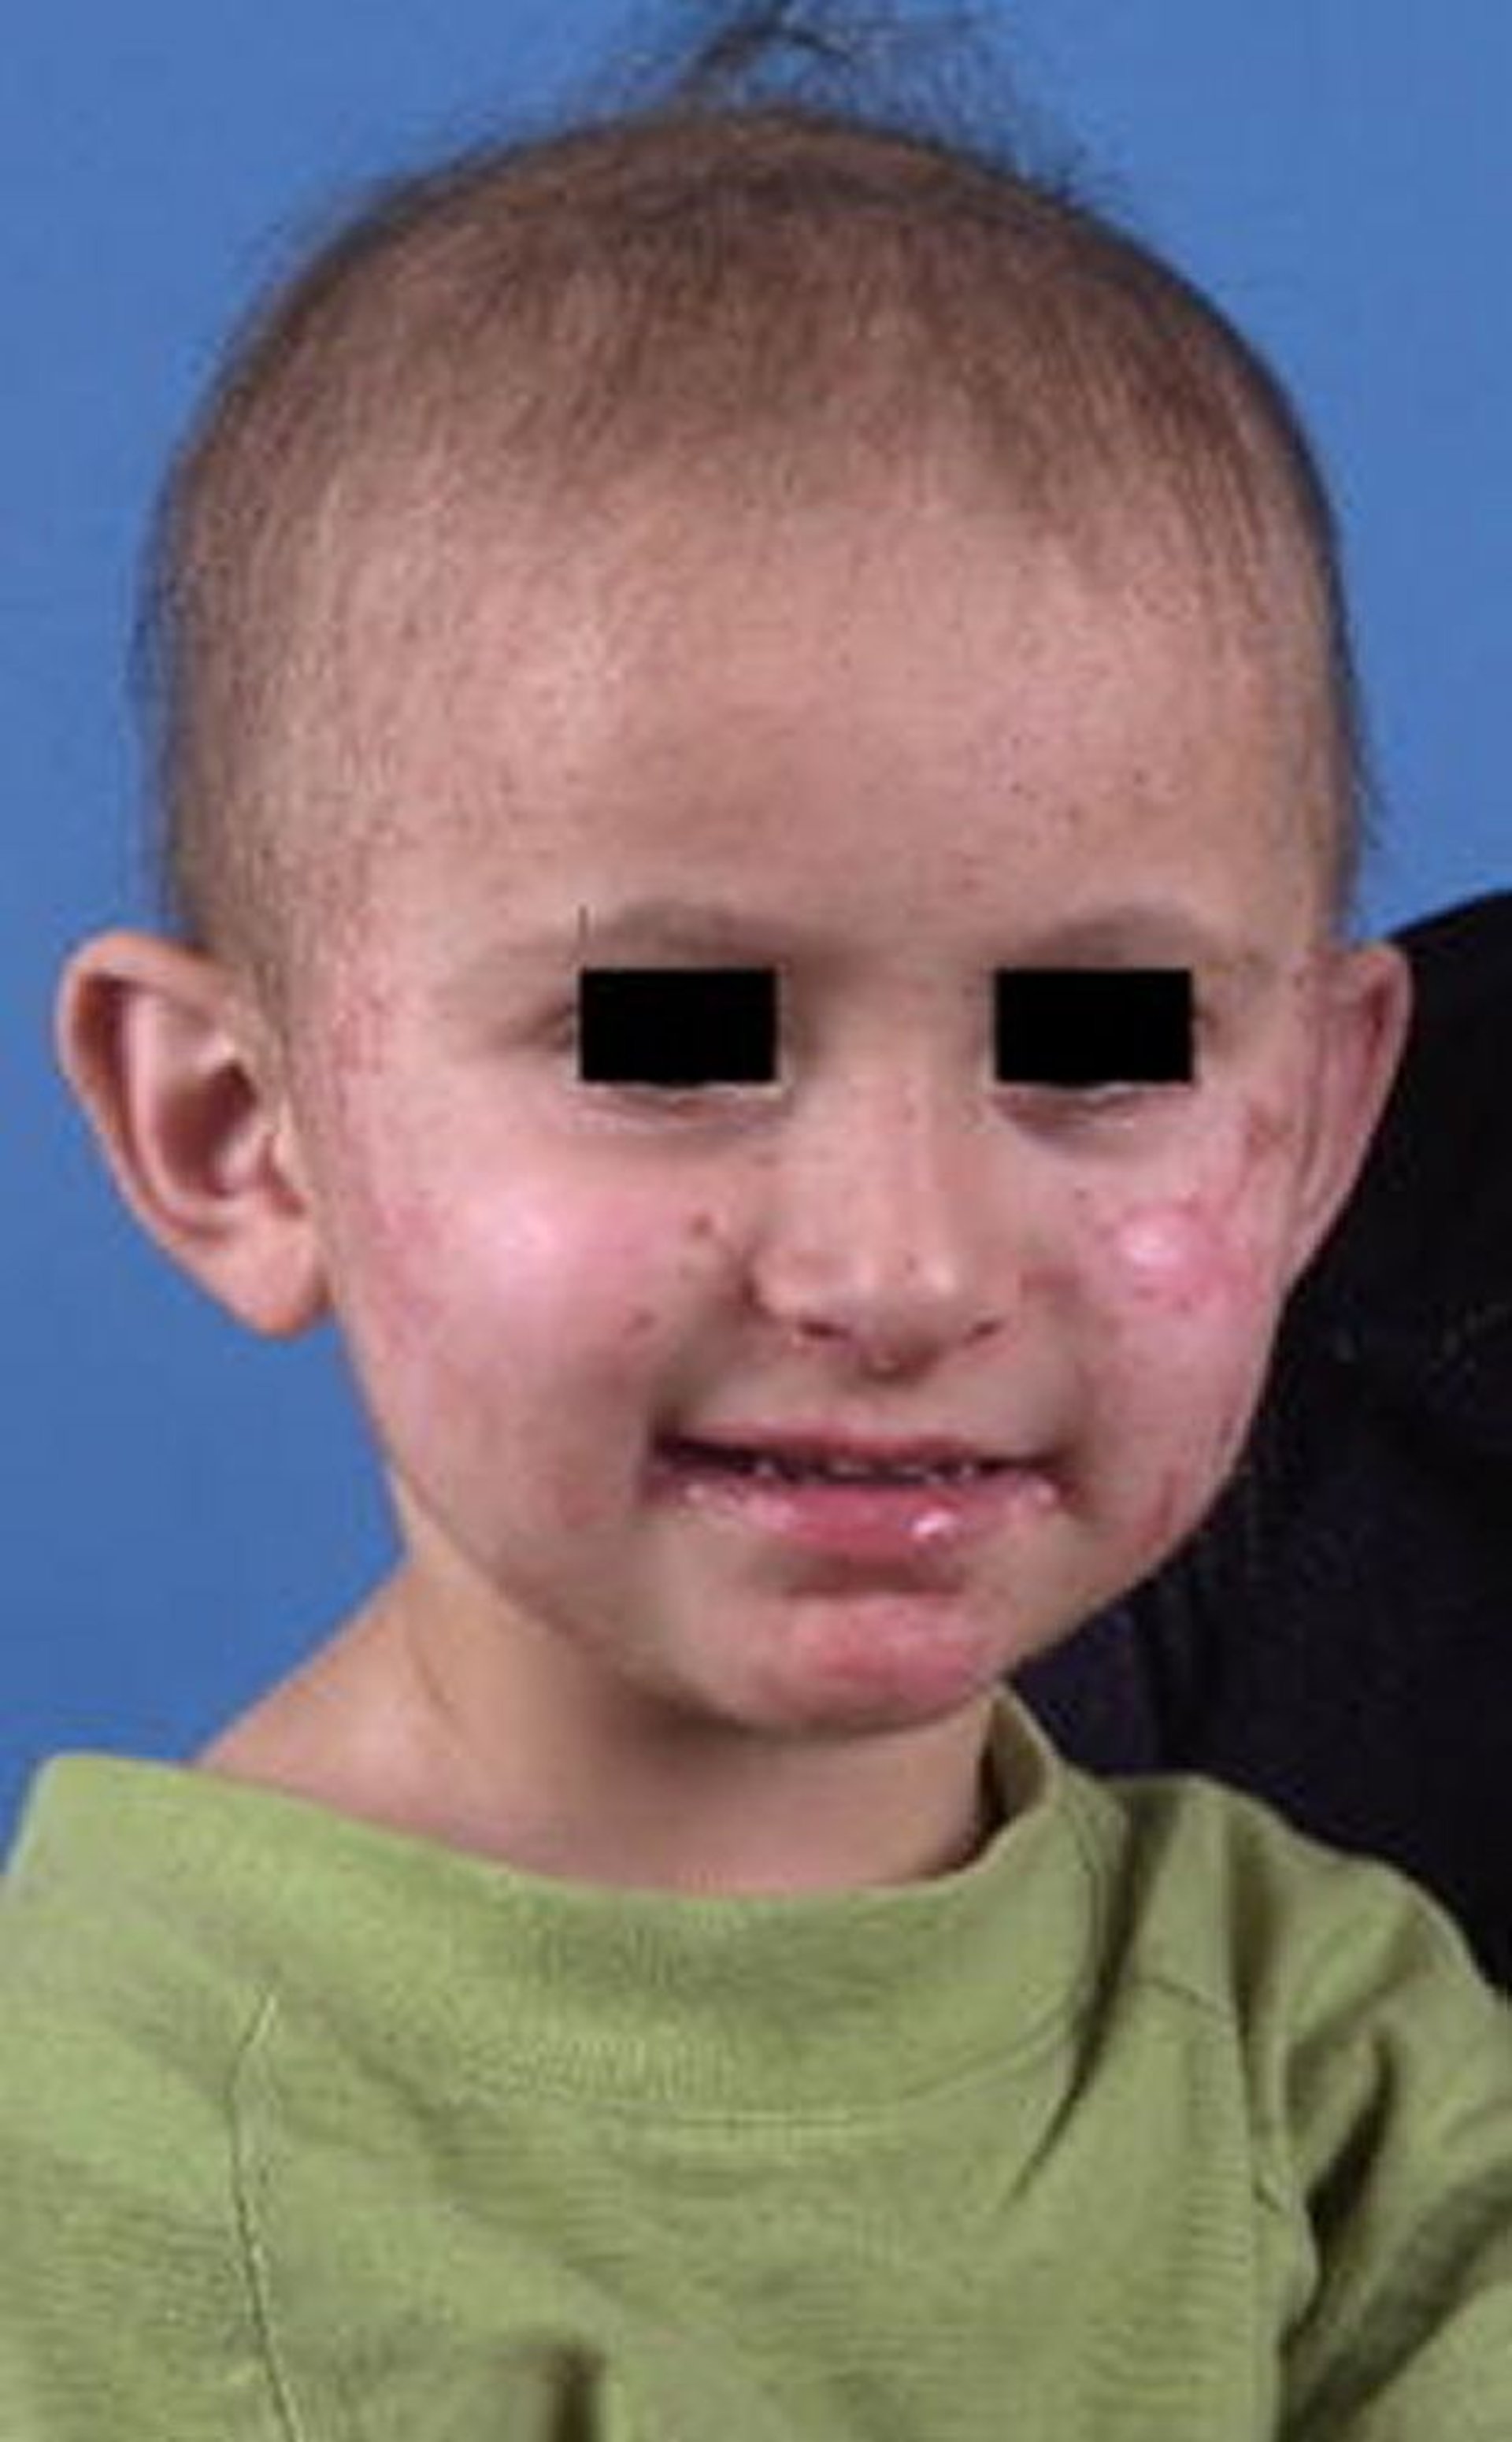 Acrodermatitis enteropática en un niño